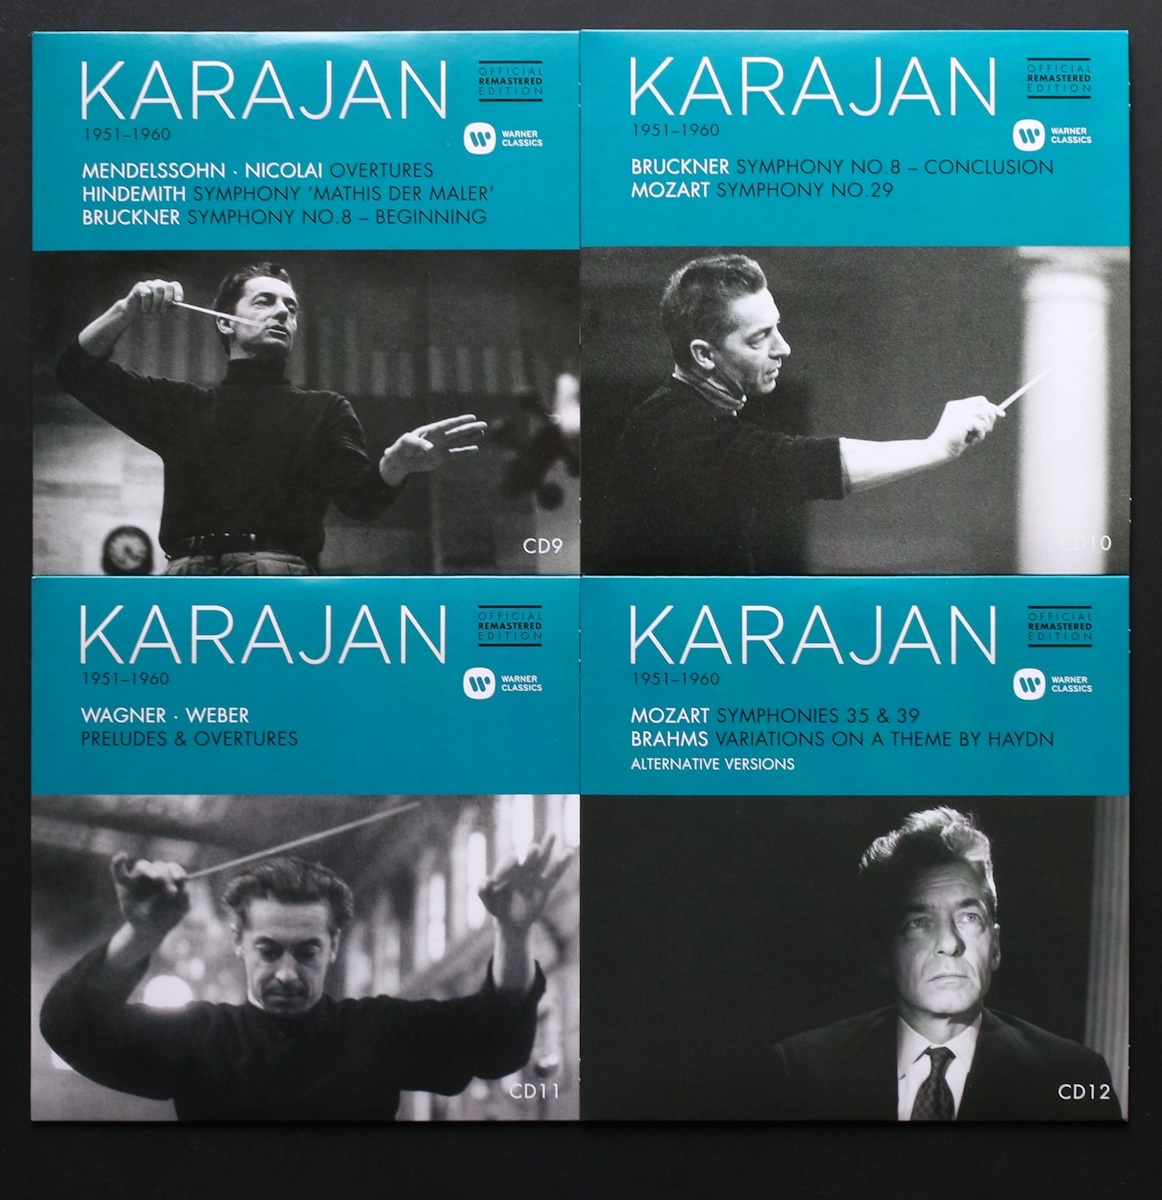 品薄/CD/12枚組/新リマスター/カラヤン/モーツァルト/ブラームス/シューベルト/ワーグナー/シューマン/ブルックナー/Karajan/Mozart/Brahms_画像7